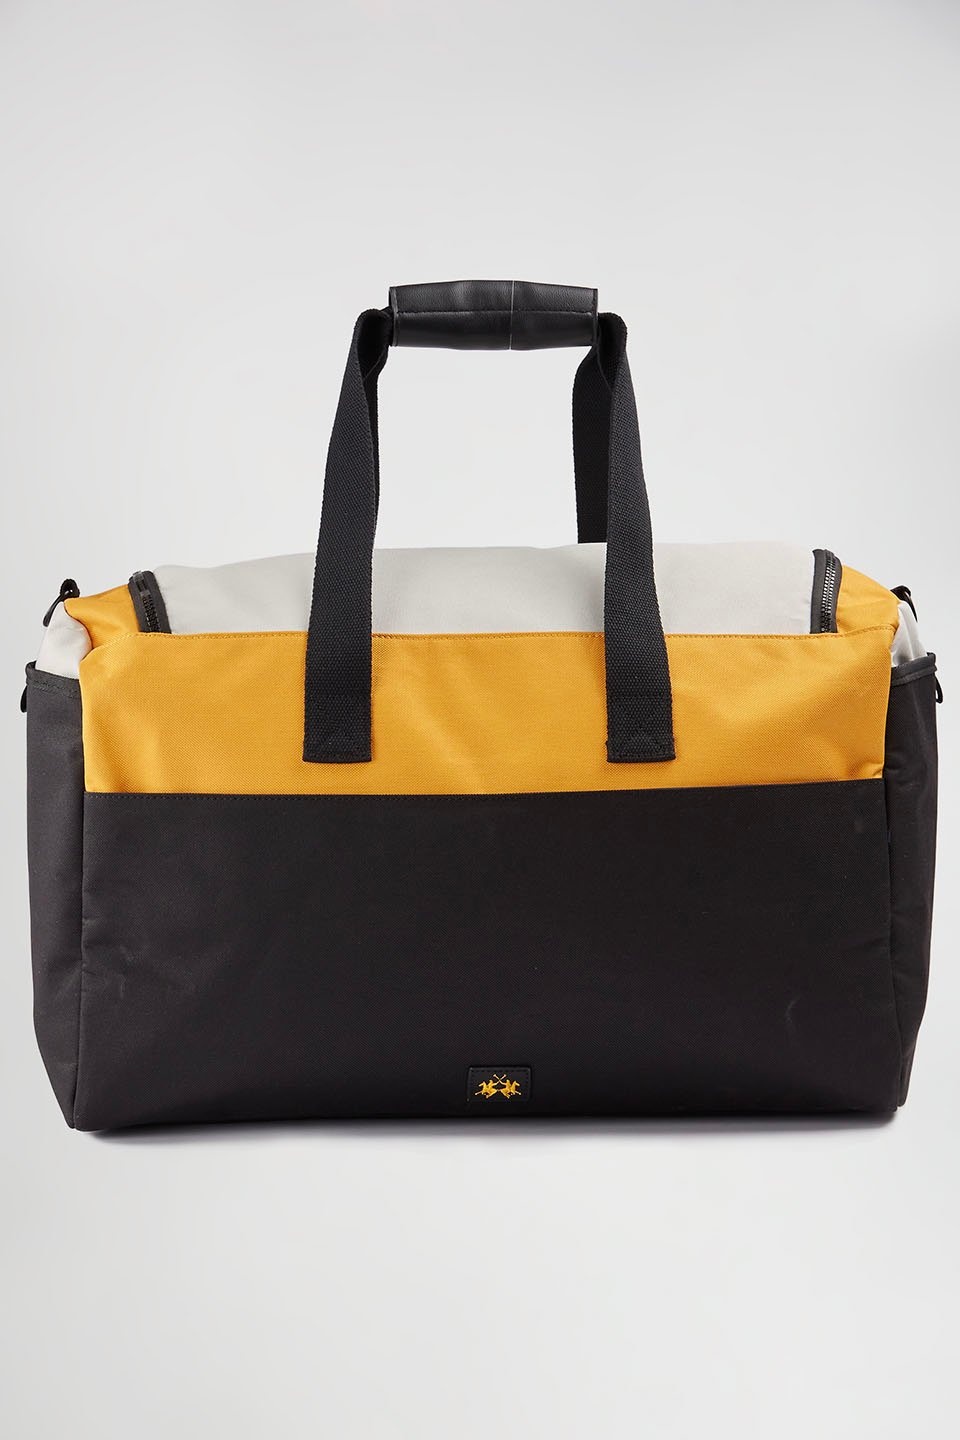 Polyester duffel bag | La Martina - Official Online Shop